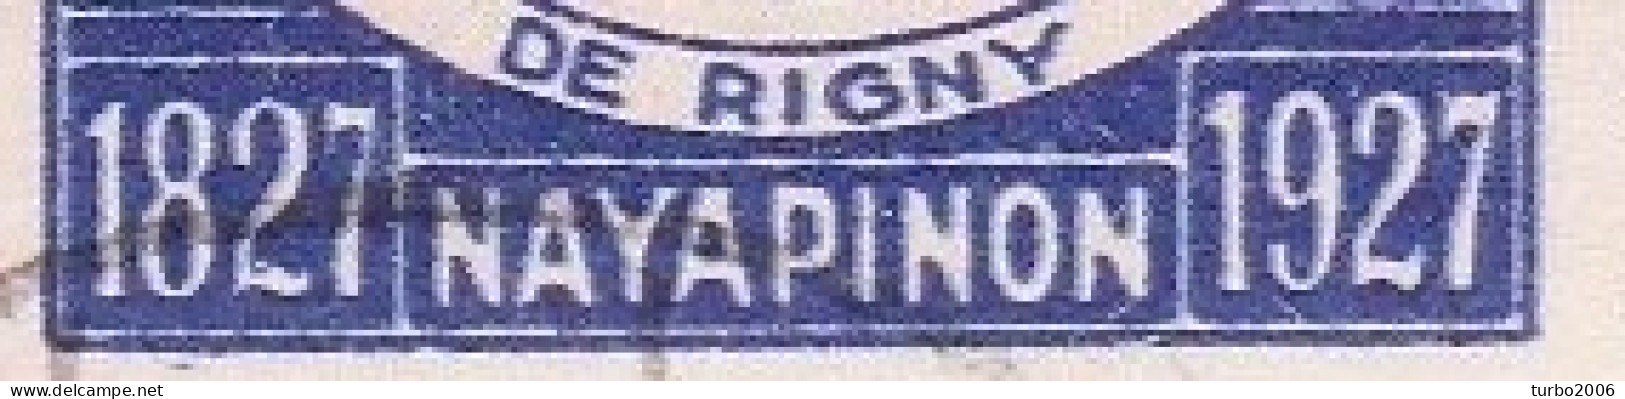 GREECE 1927 Centenary Of Navarino Naval Battle Admiral De Rigny Blue Double Printing Vl. 442 VAR - Gebruikt